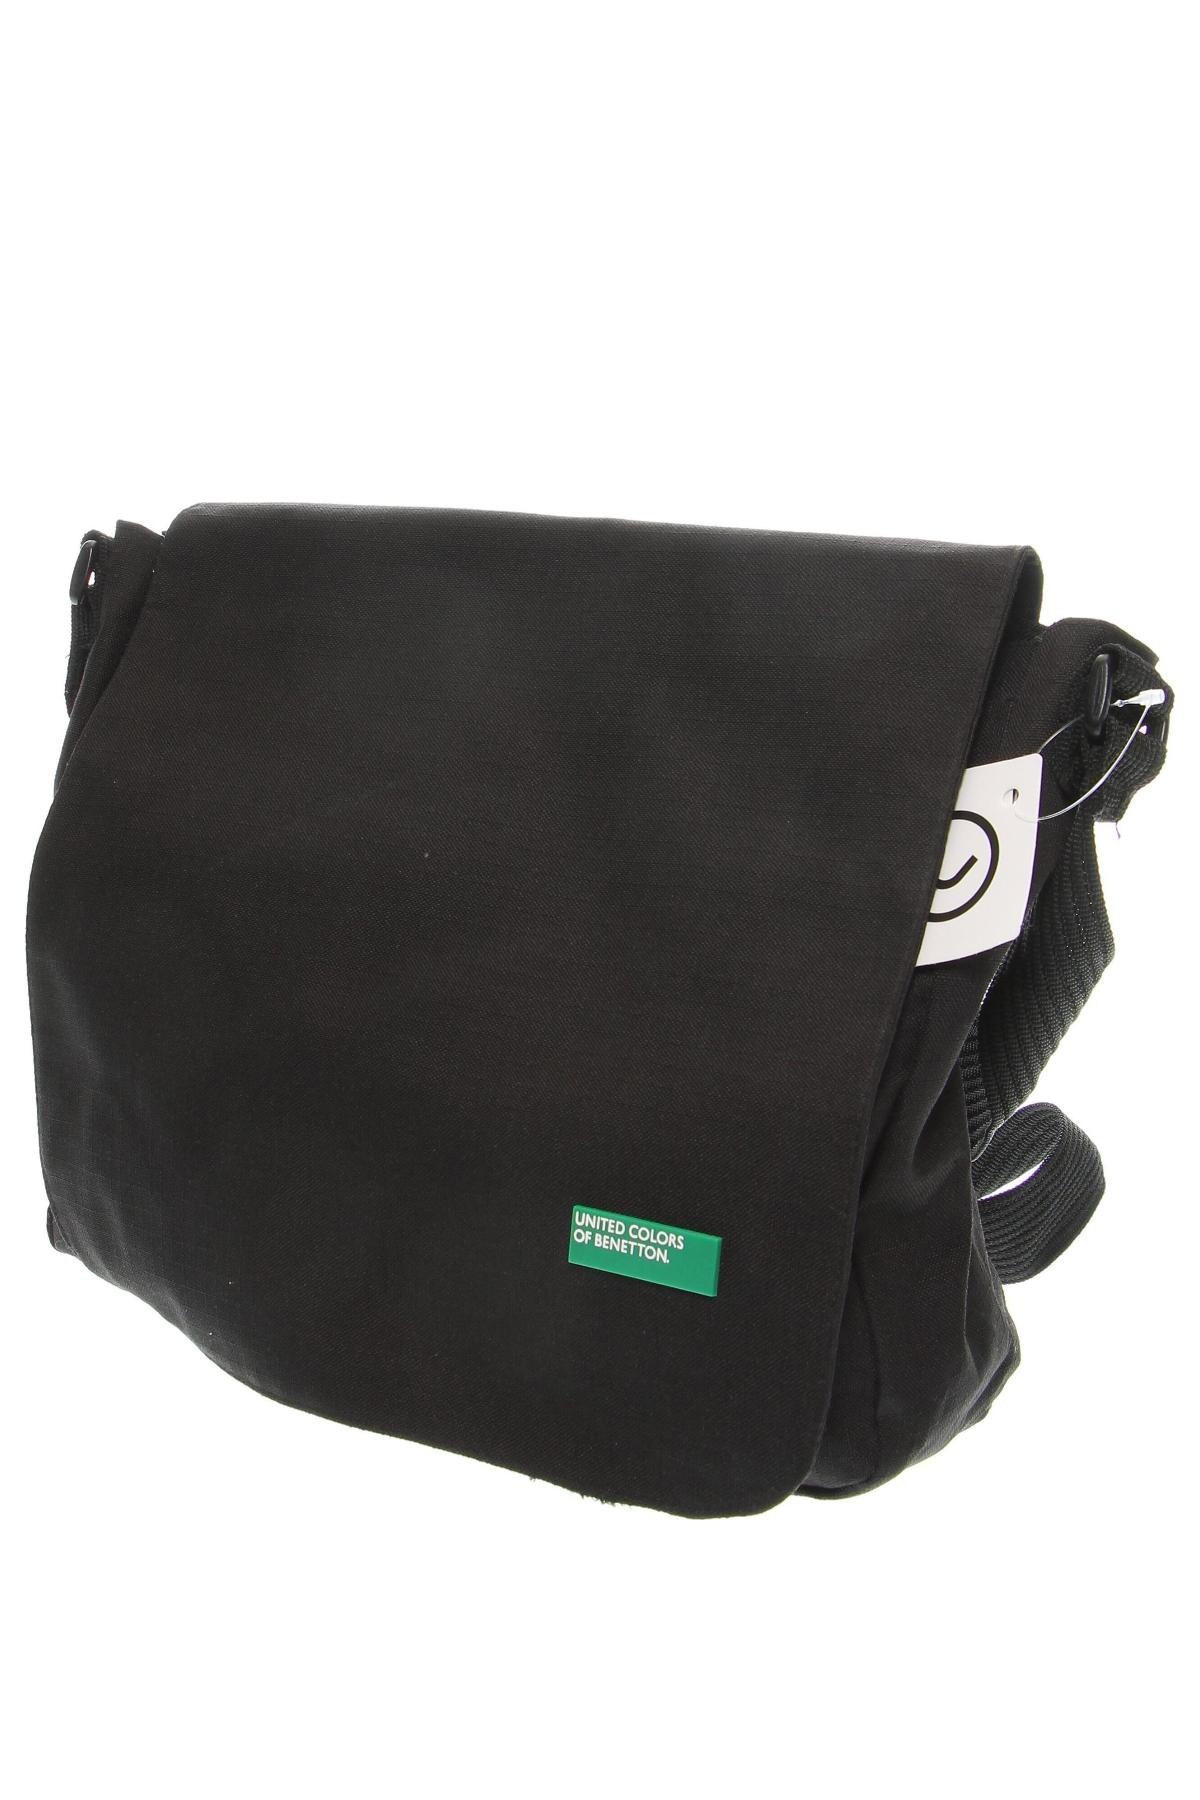 Τσάντα United Colors Of Benetton, Χρώμα Μαύρο, Τιμή 25,36 €